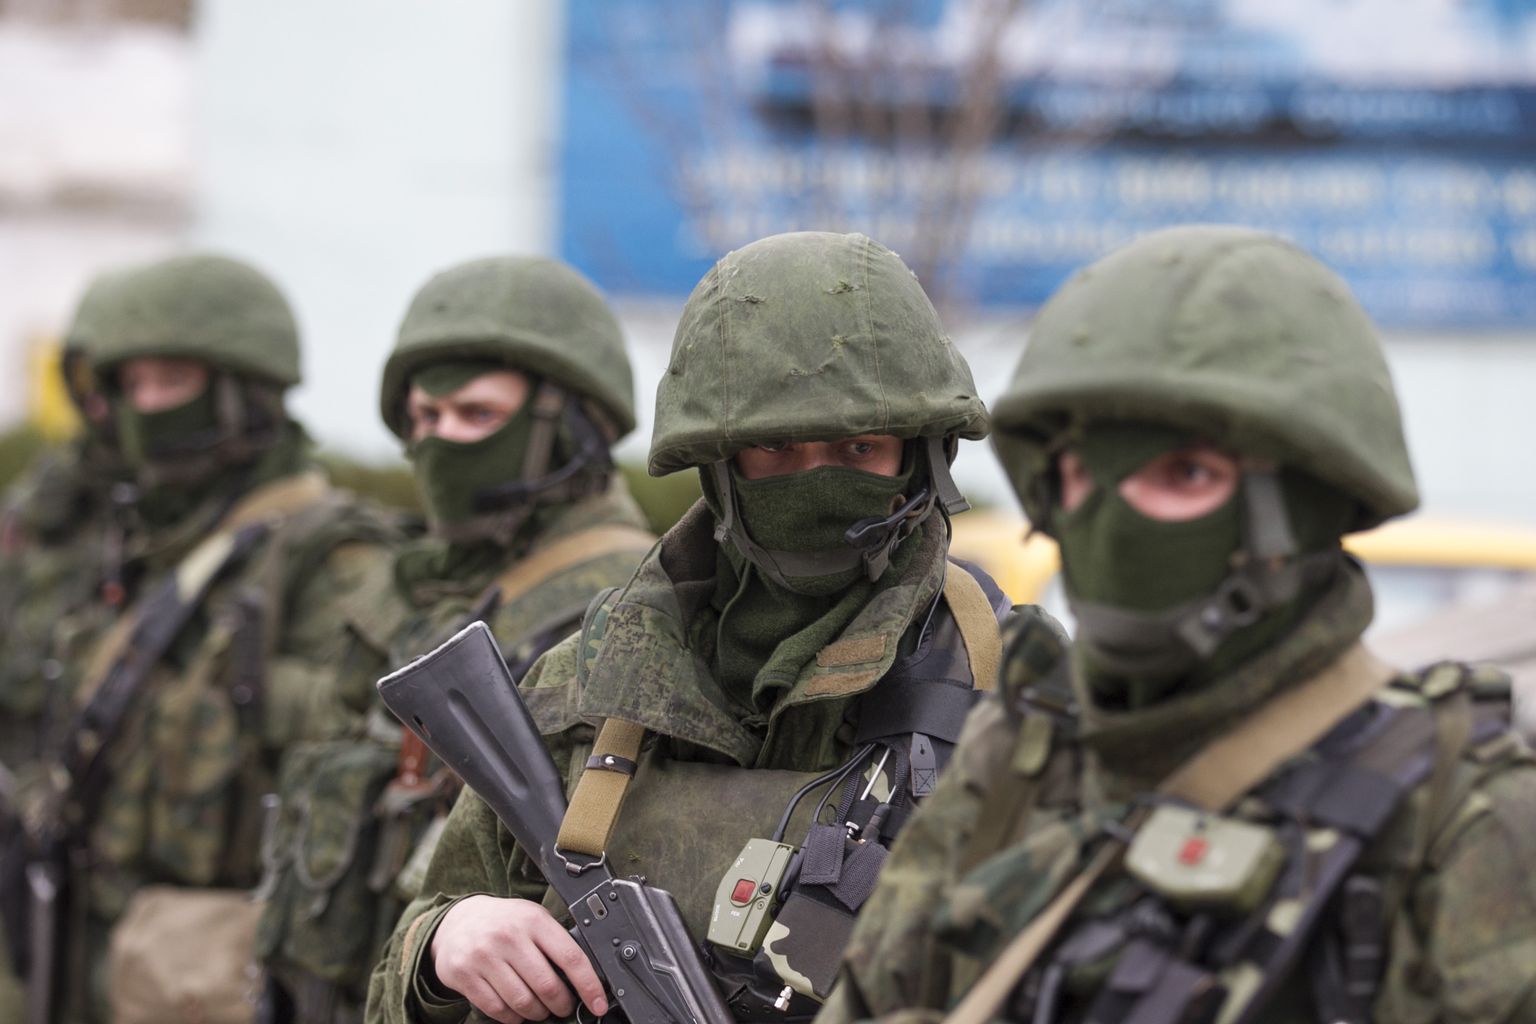 "Зеленые человечки" то есть российские военнослужащие без опознавательных знаков. Крым. 2014